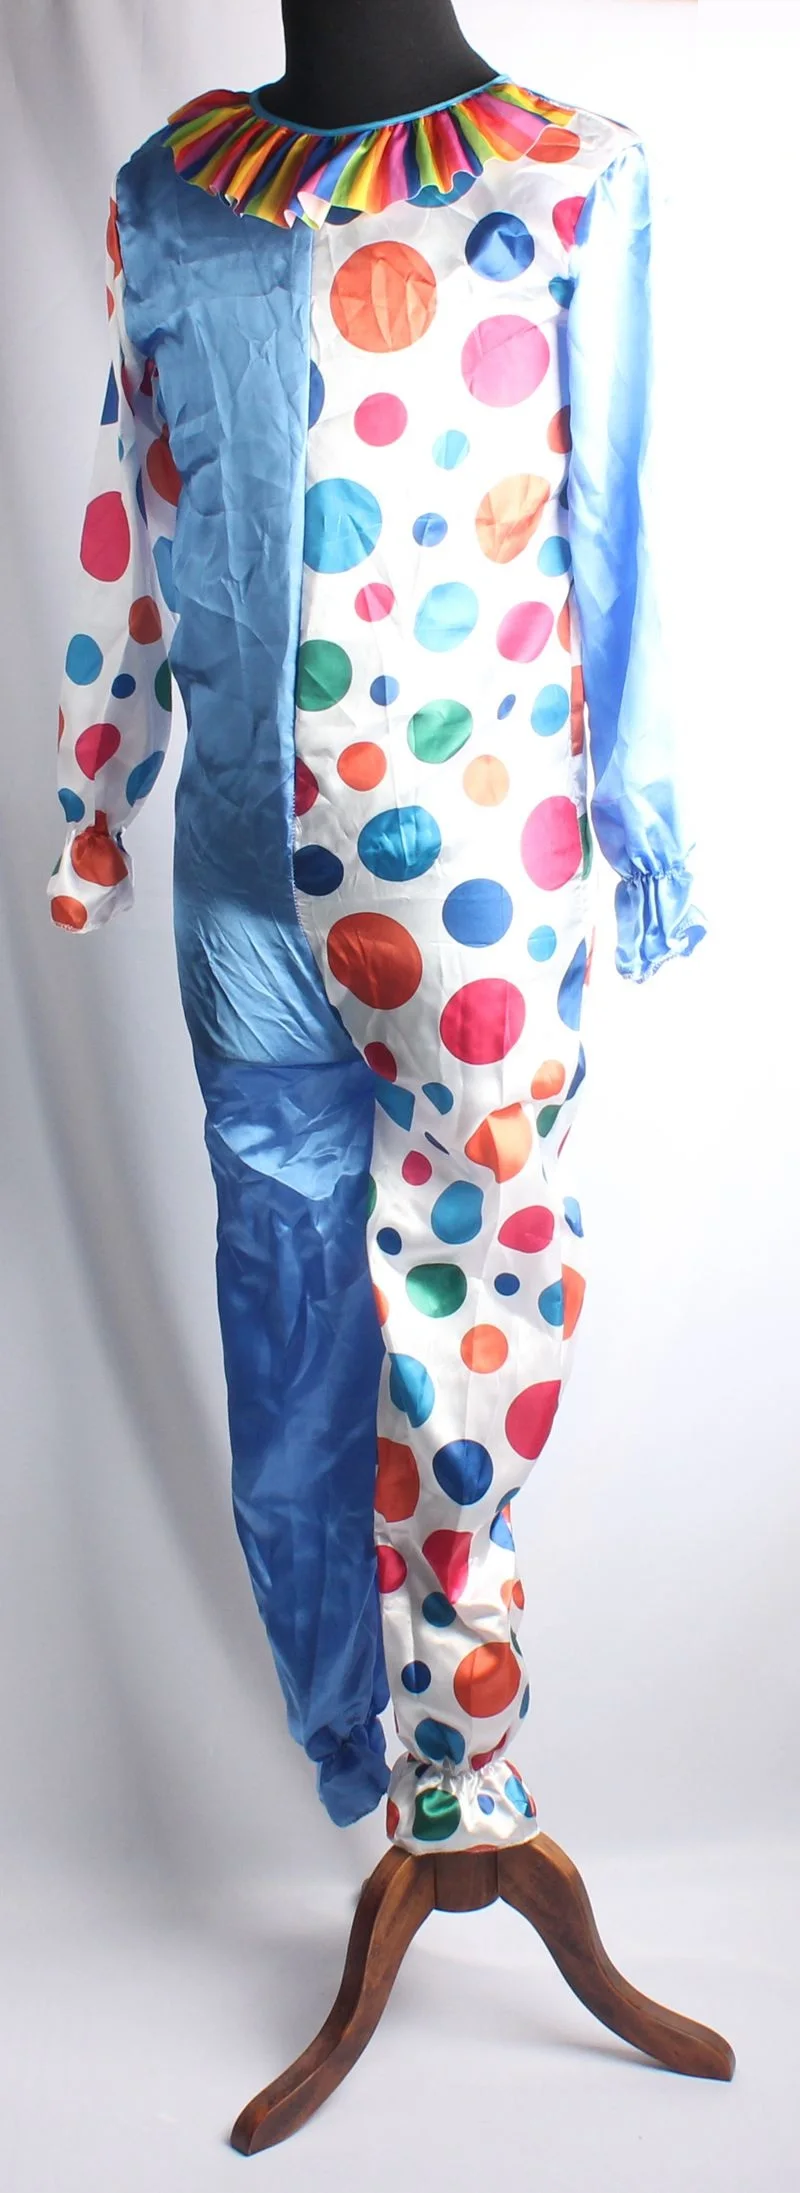 Горячая Хэллоуин взрослых убийца клоун Одежда праздник разнообразие смешной костюм клоуна джокер костюм косплей Вечерние наряды Рождество